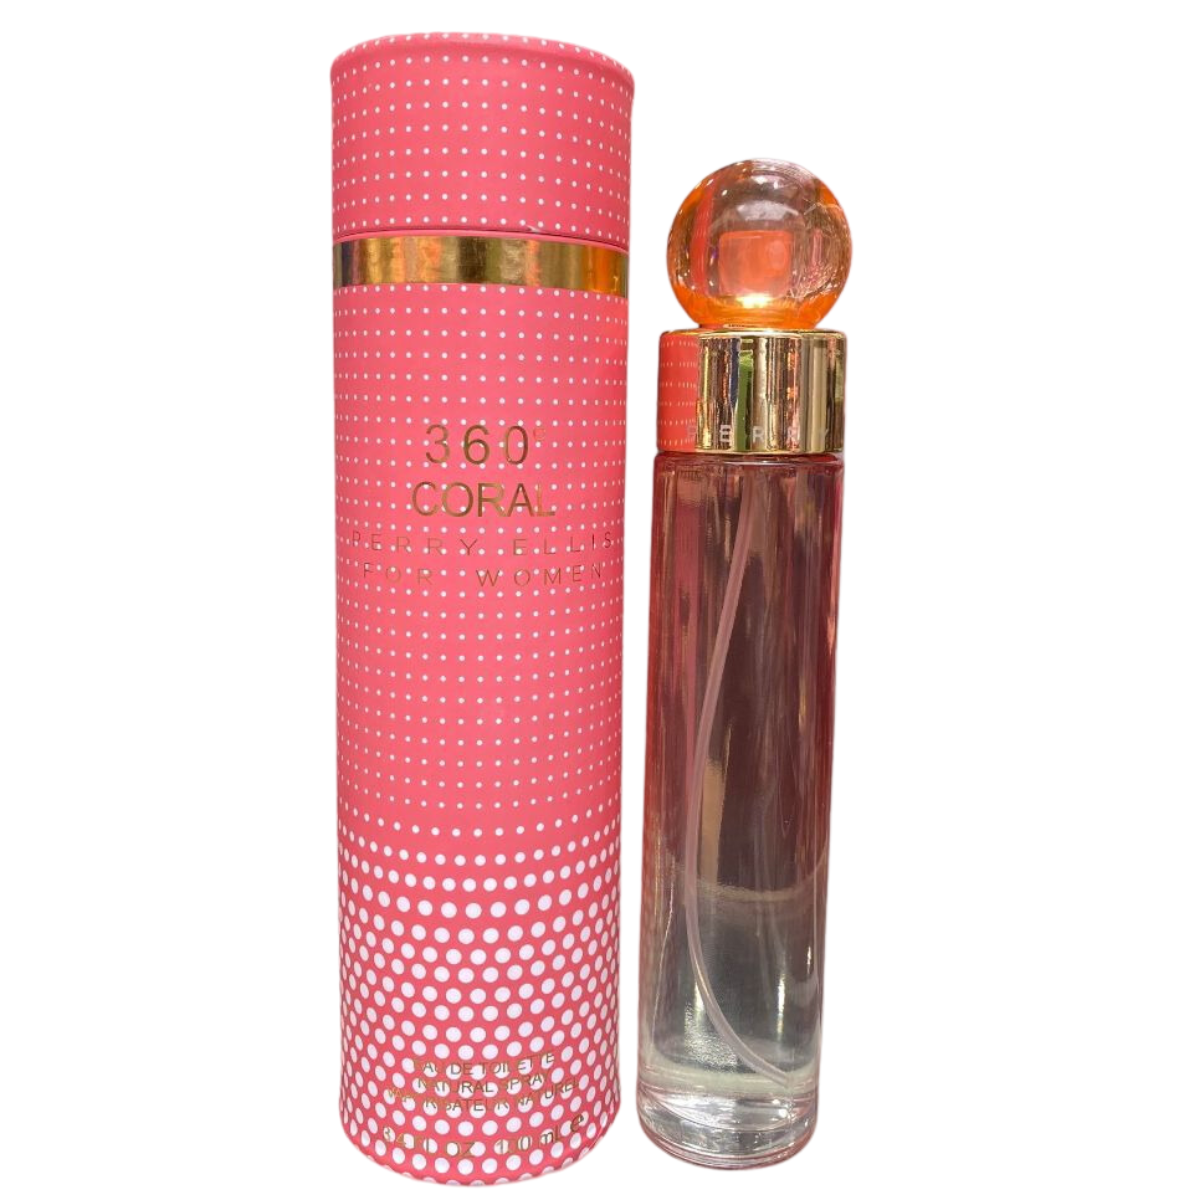 perry ellis coral perfume  para mujer 100ml Comprar tienda onlineshoppingcenterg Colombia centro de compras en linea